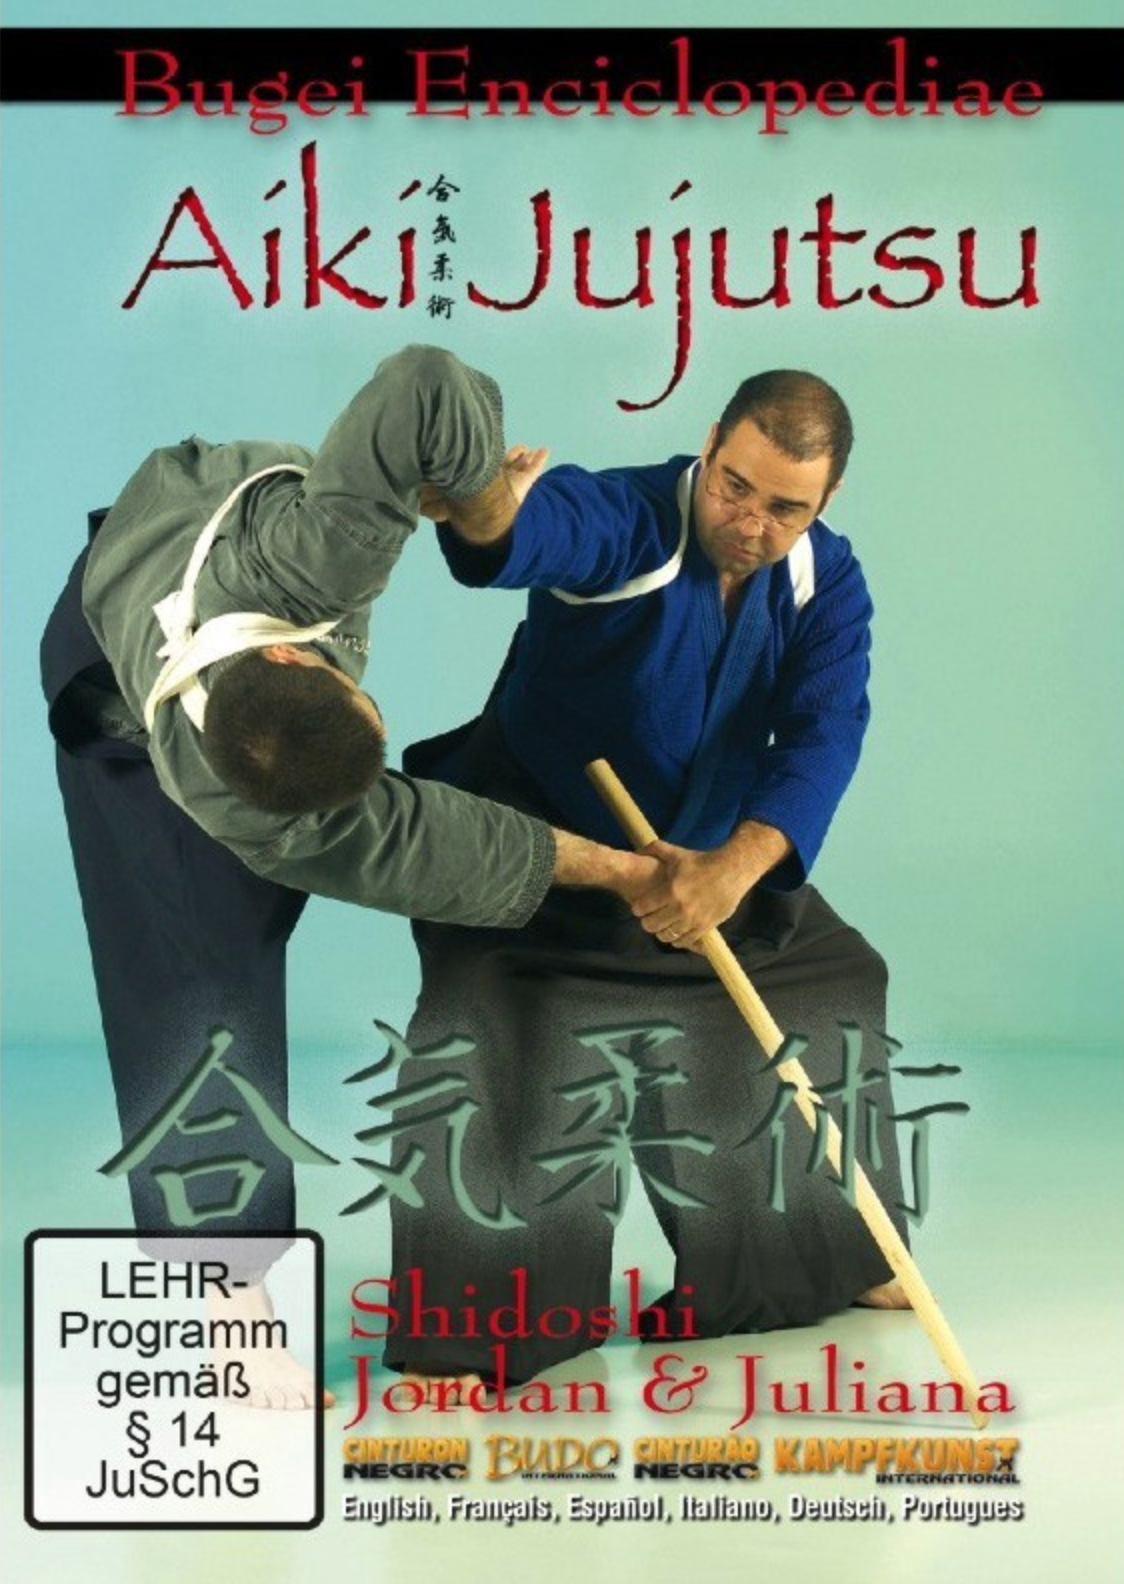 Bugei Aiki-Jujutsu Vol 1 DVD by Jordan Augusto - Budovideos